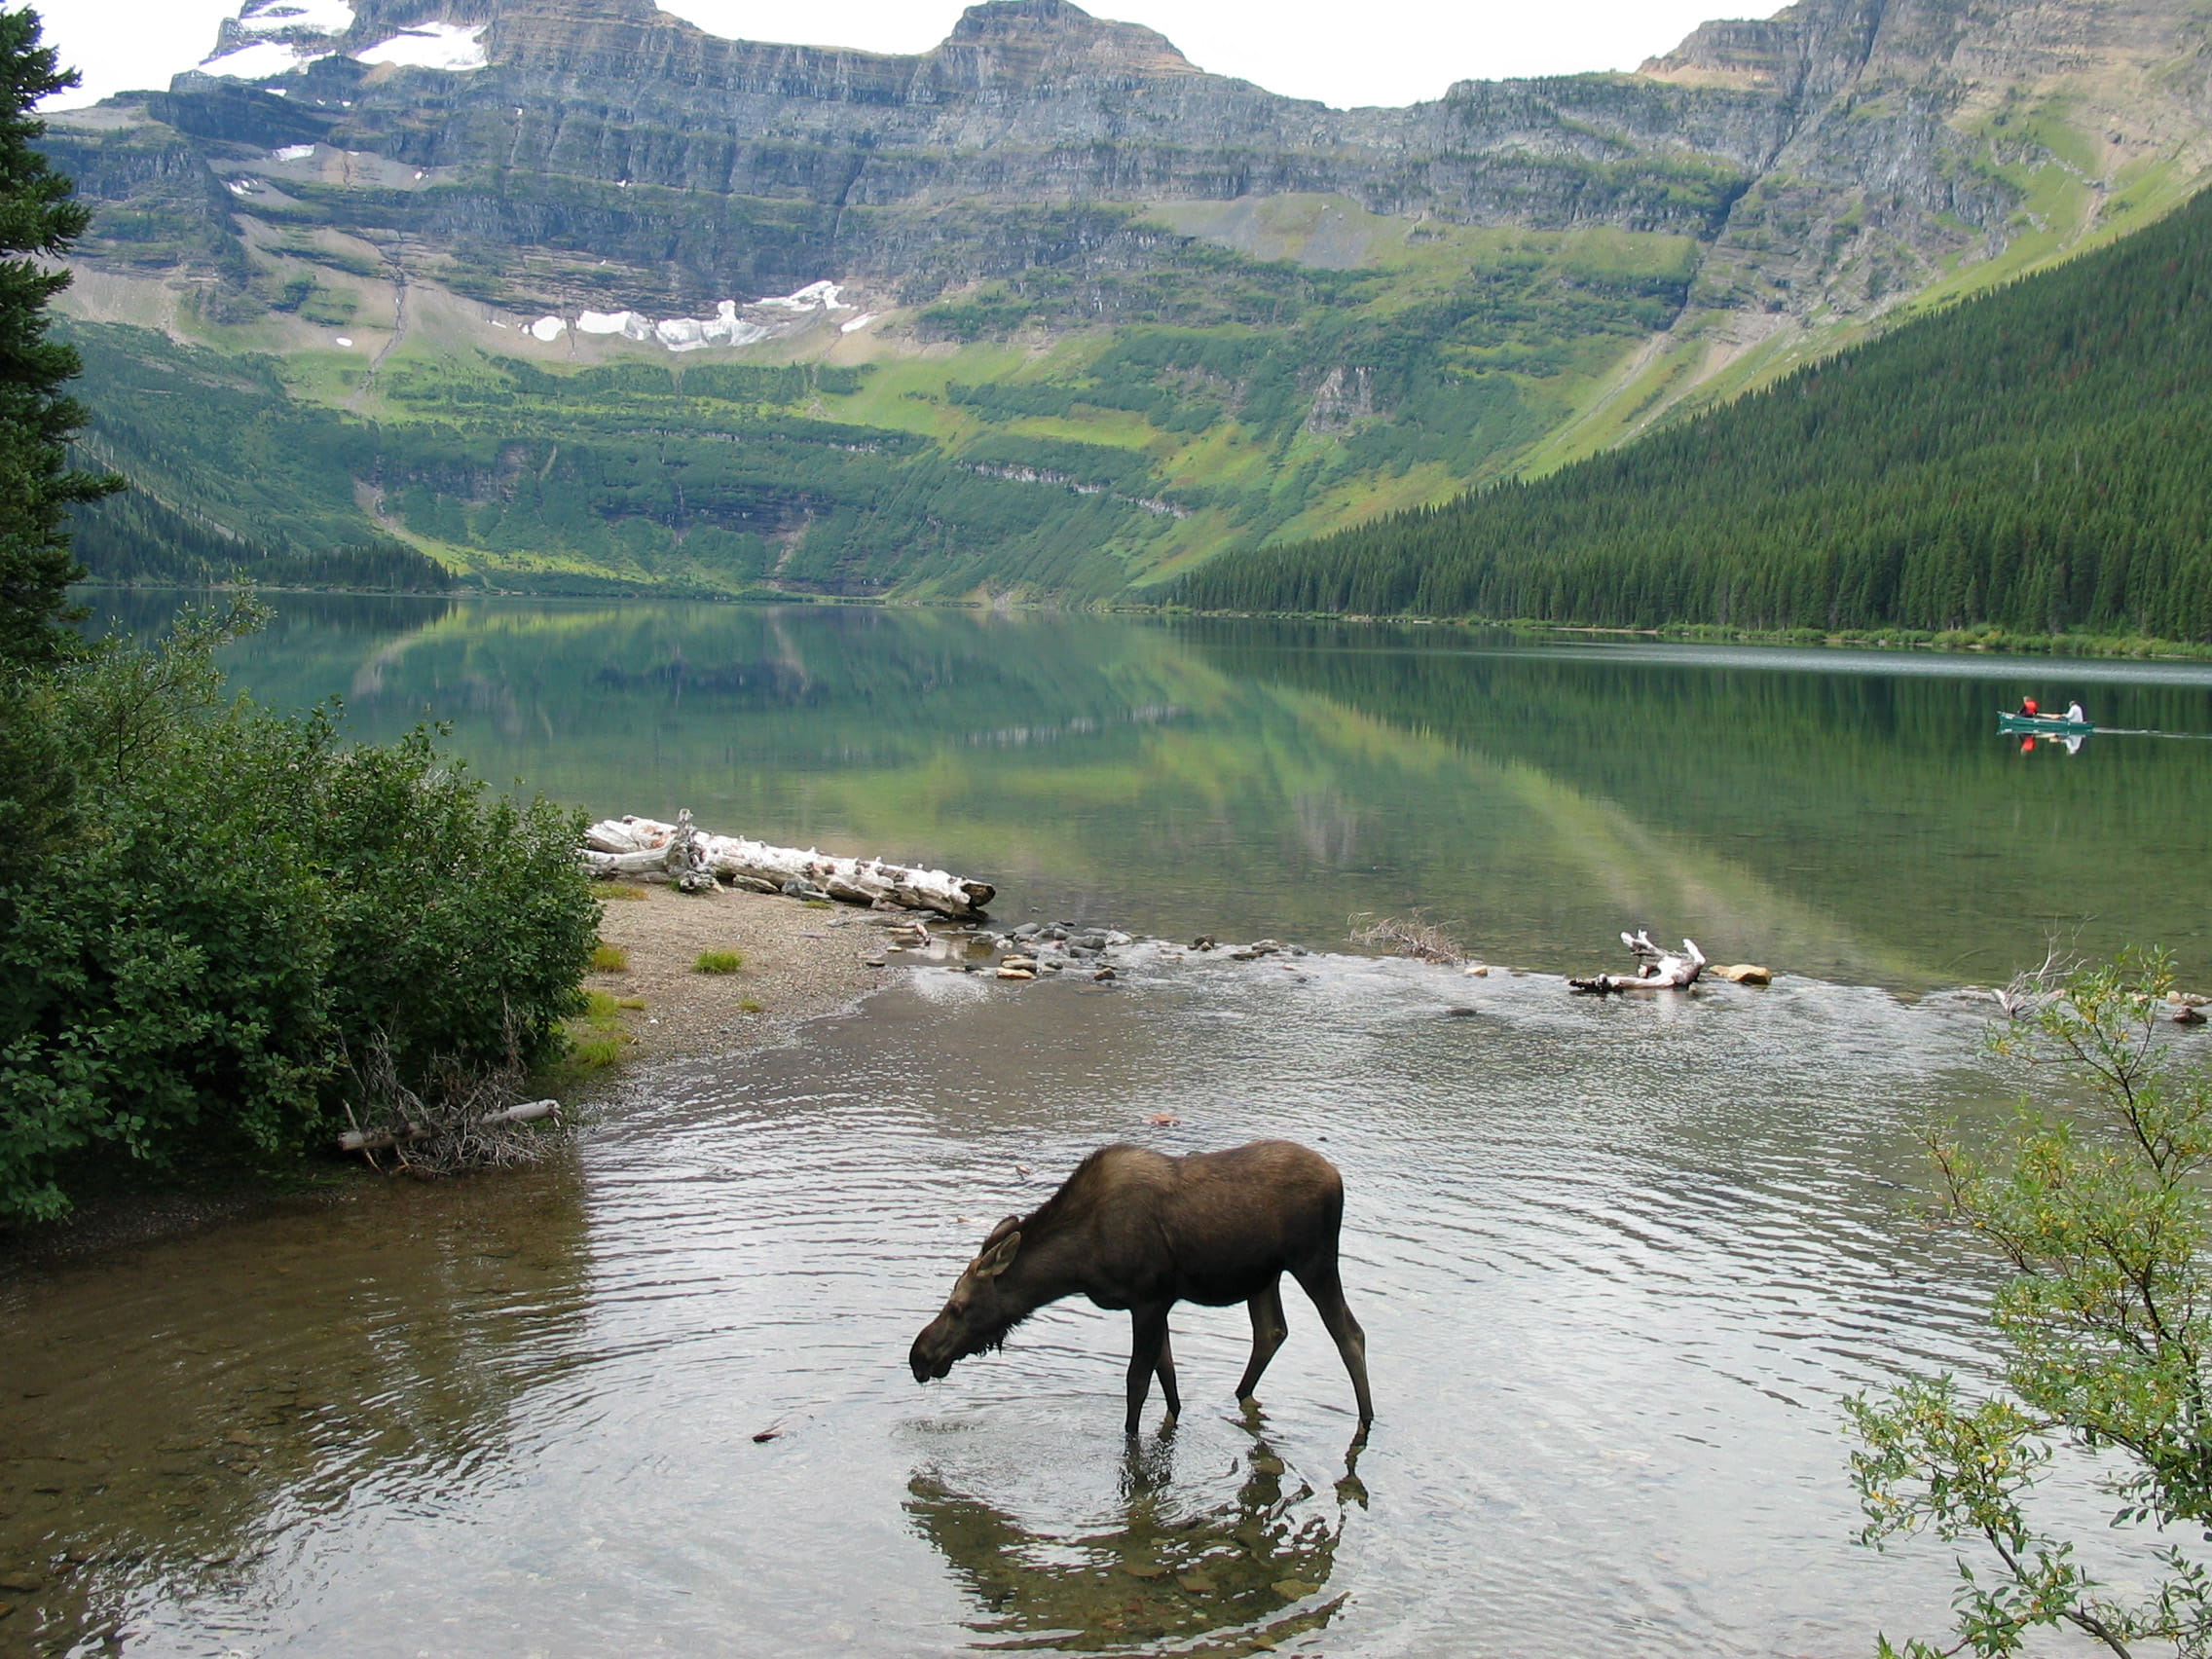 Moose taking a drink at Cameron lake at Waterton Lakes National Park, Alberta, Canada